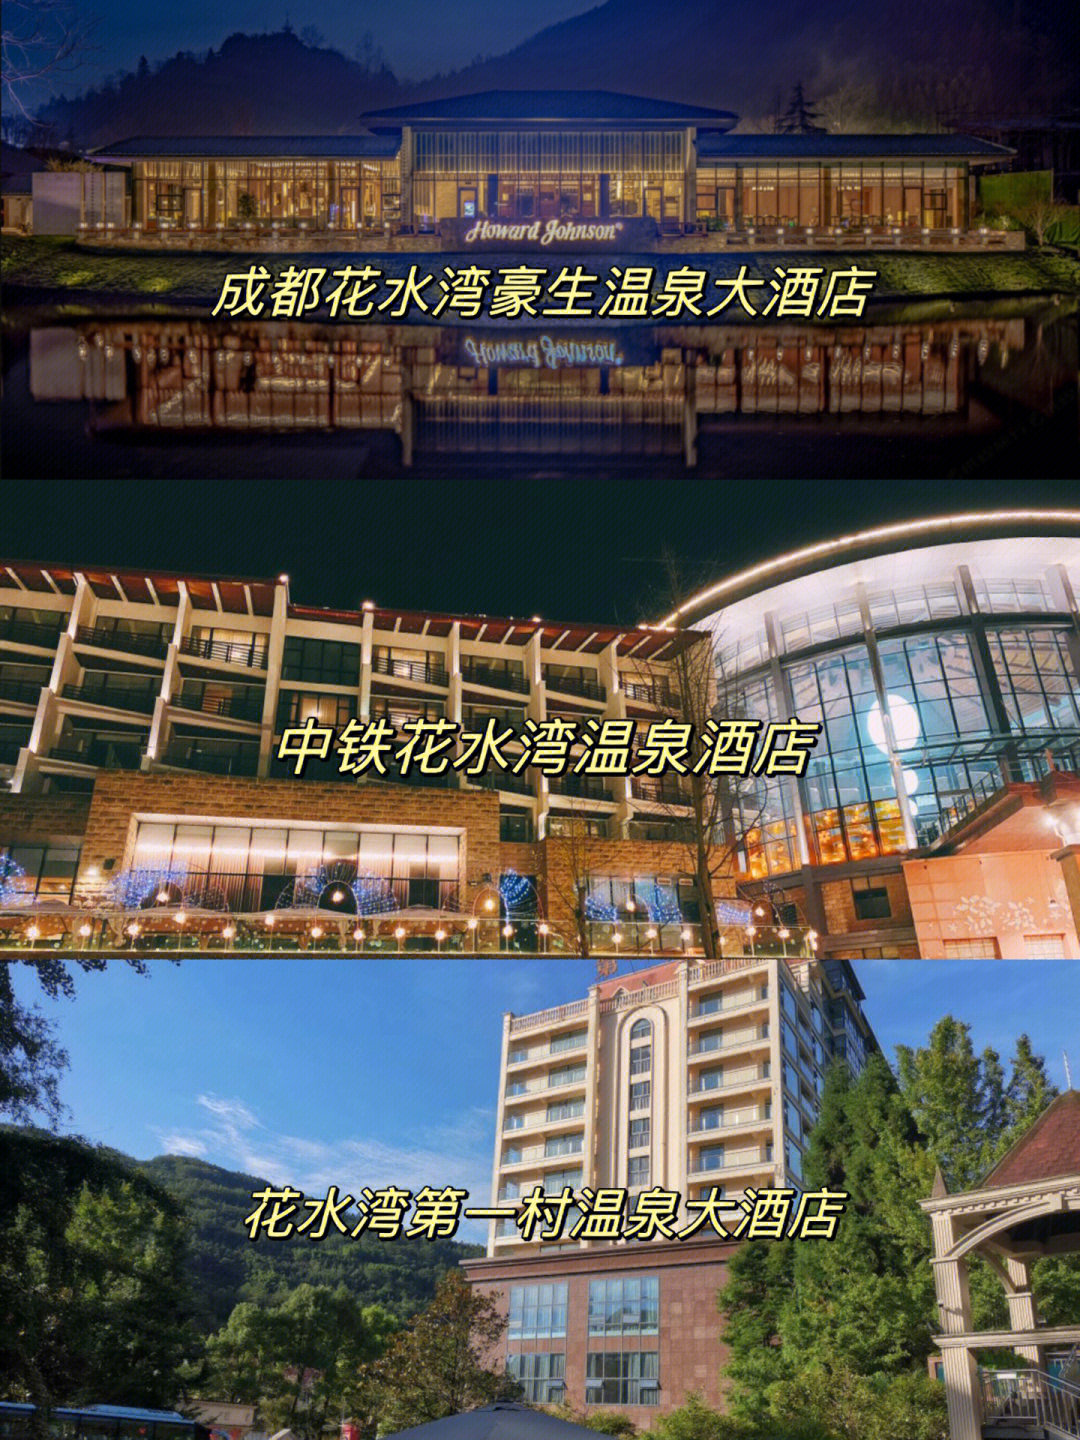 花水湾名人酒店改名图片